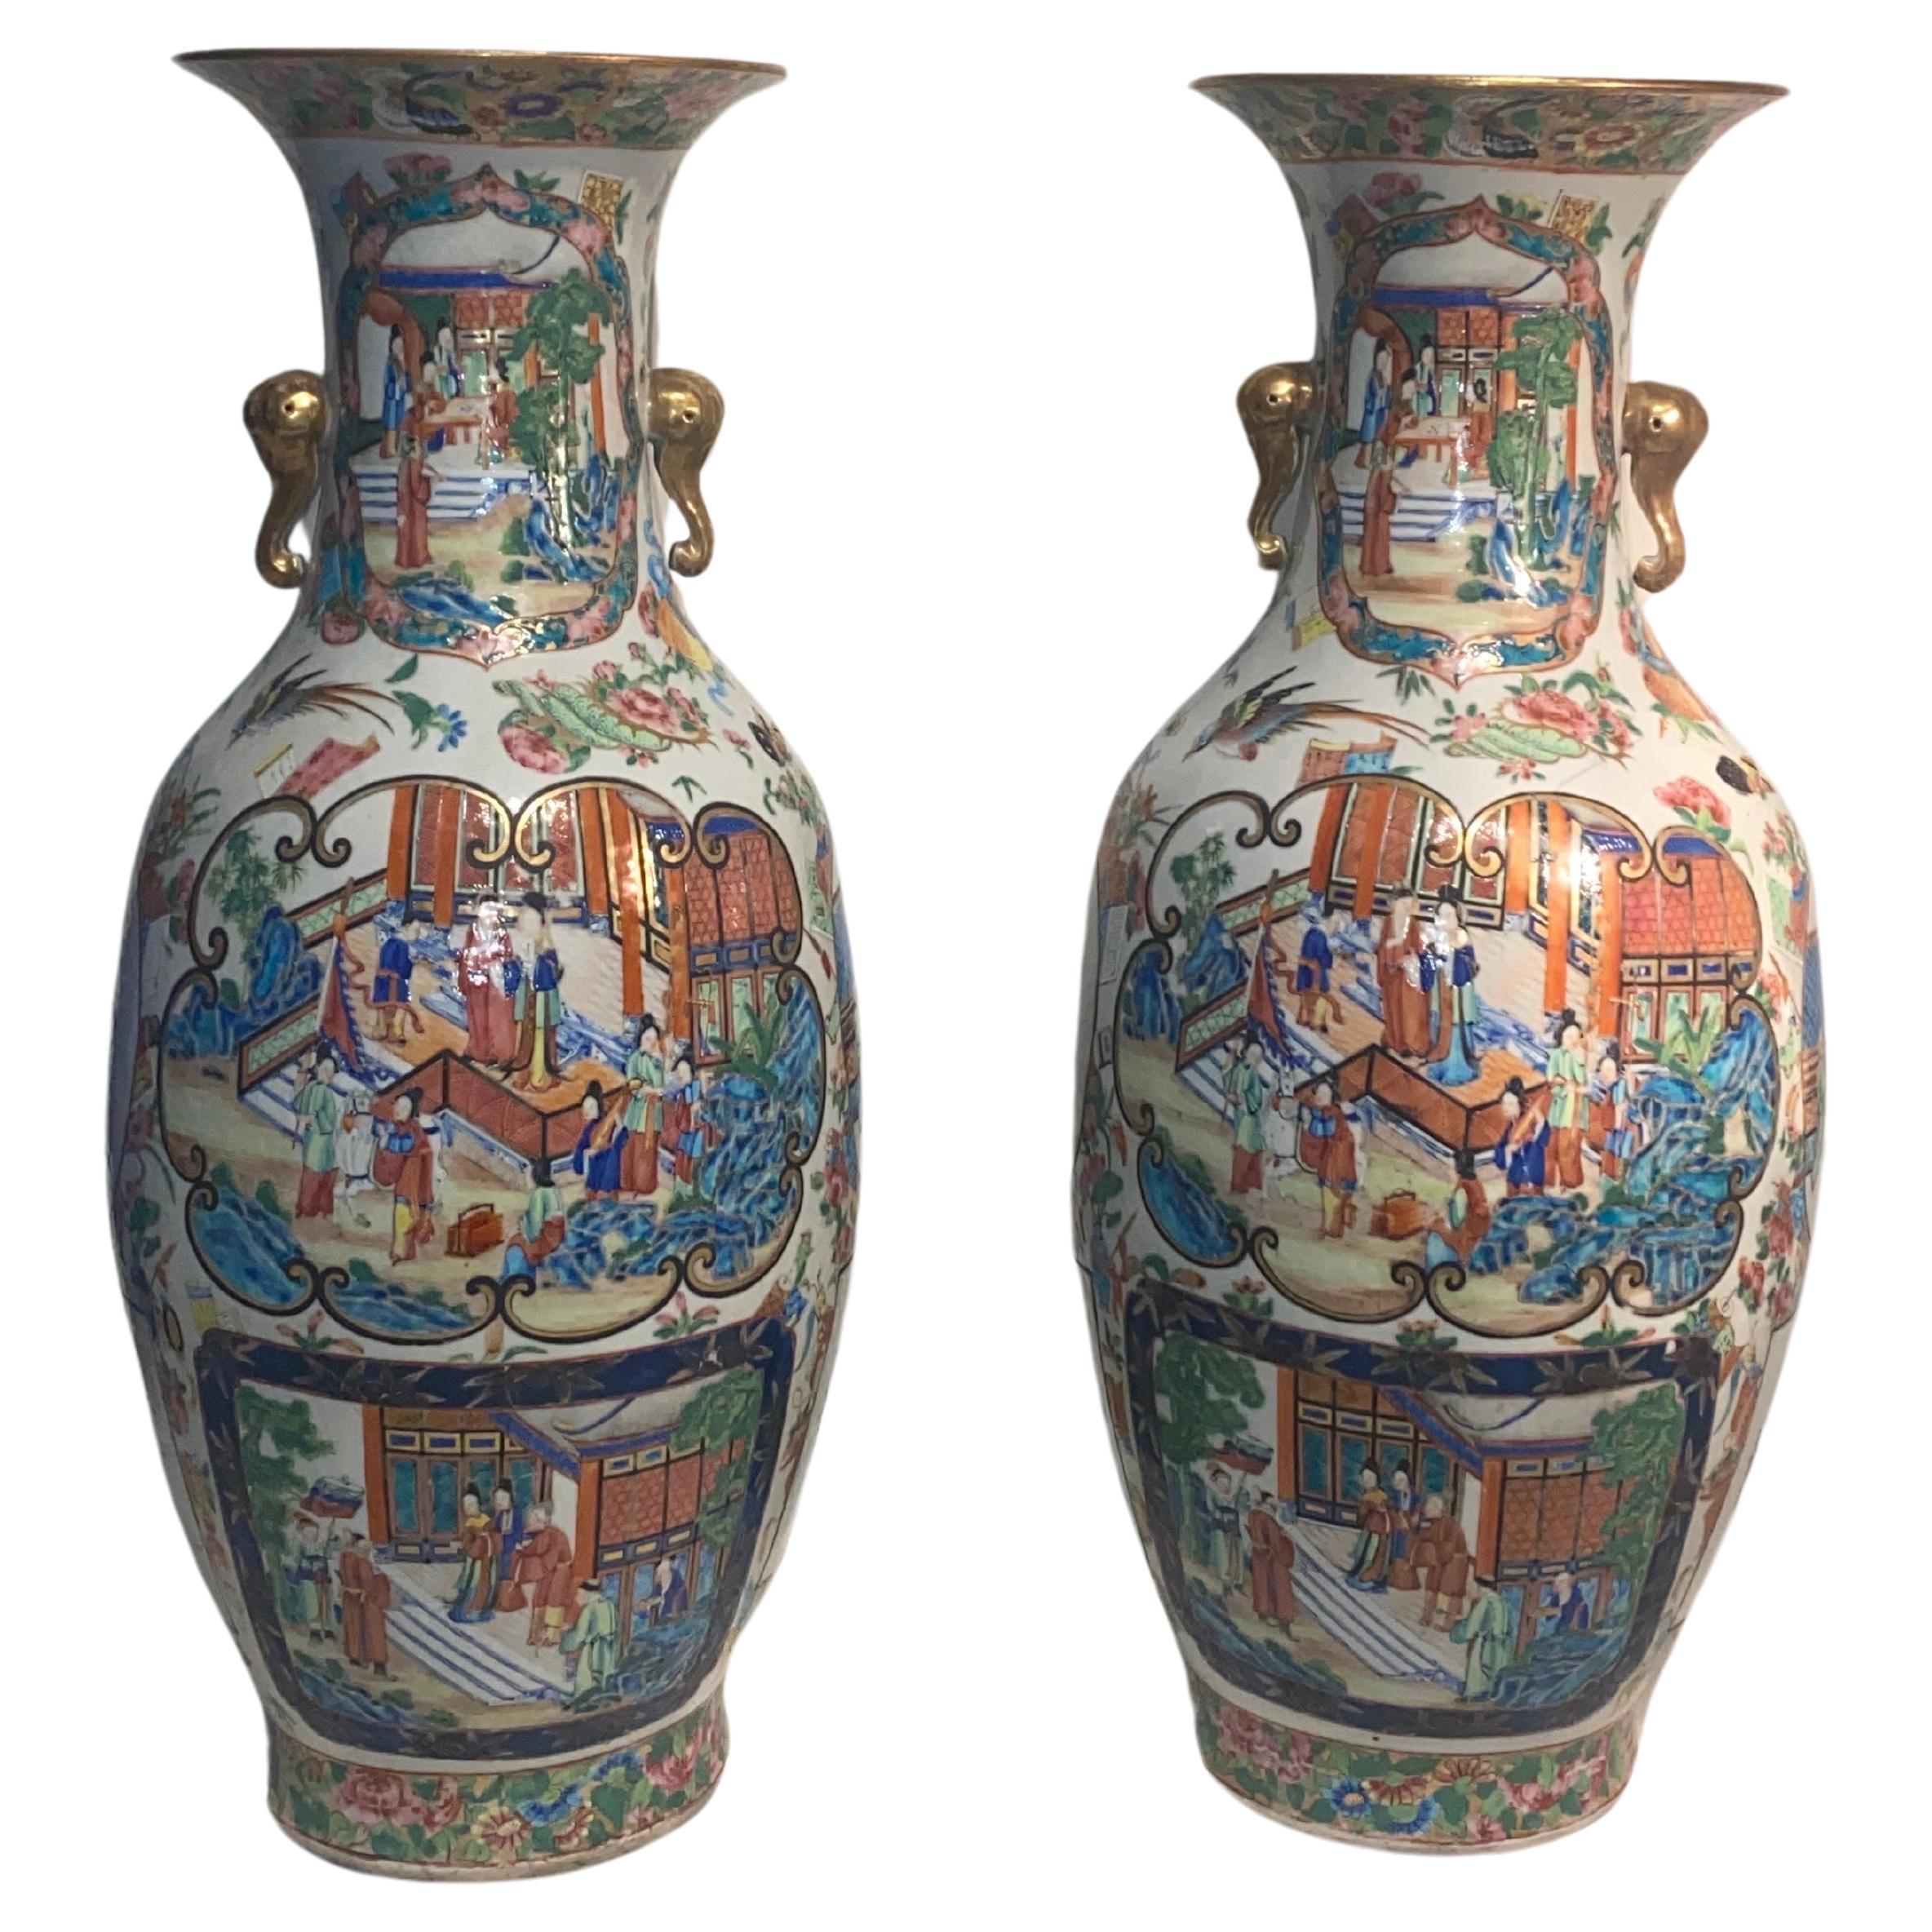 Ein beeindruckendes Paar kanonische Famille-Rosenmedaillon-Vasen von beeindruckender Qualität, 19. Jahrhundert